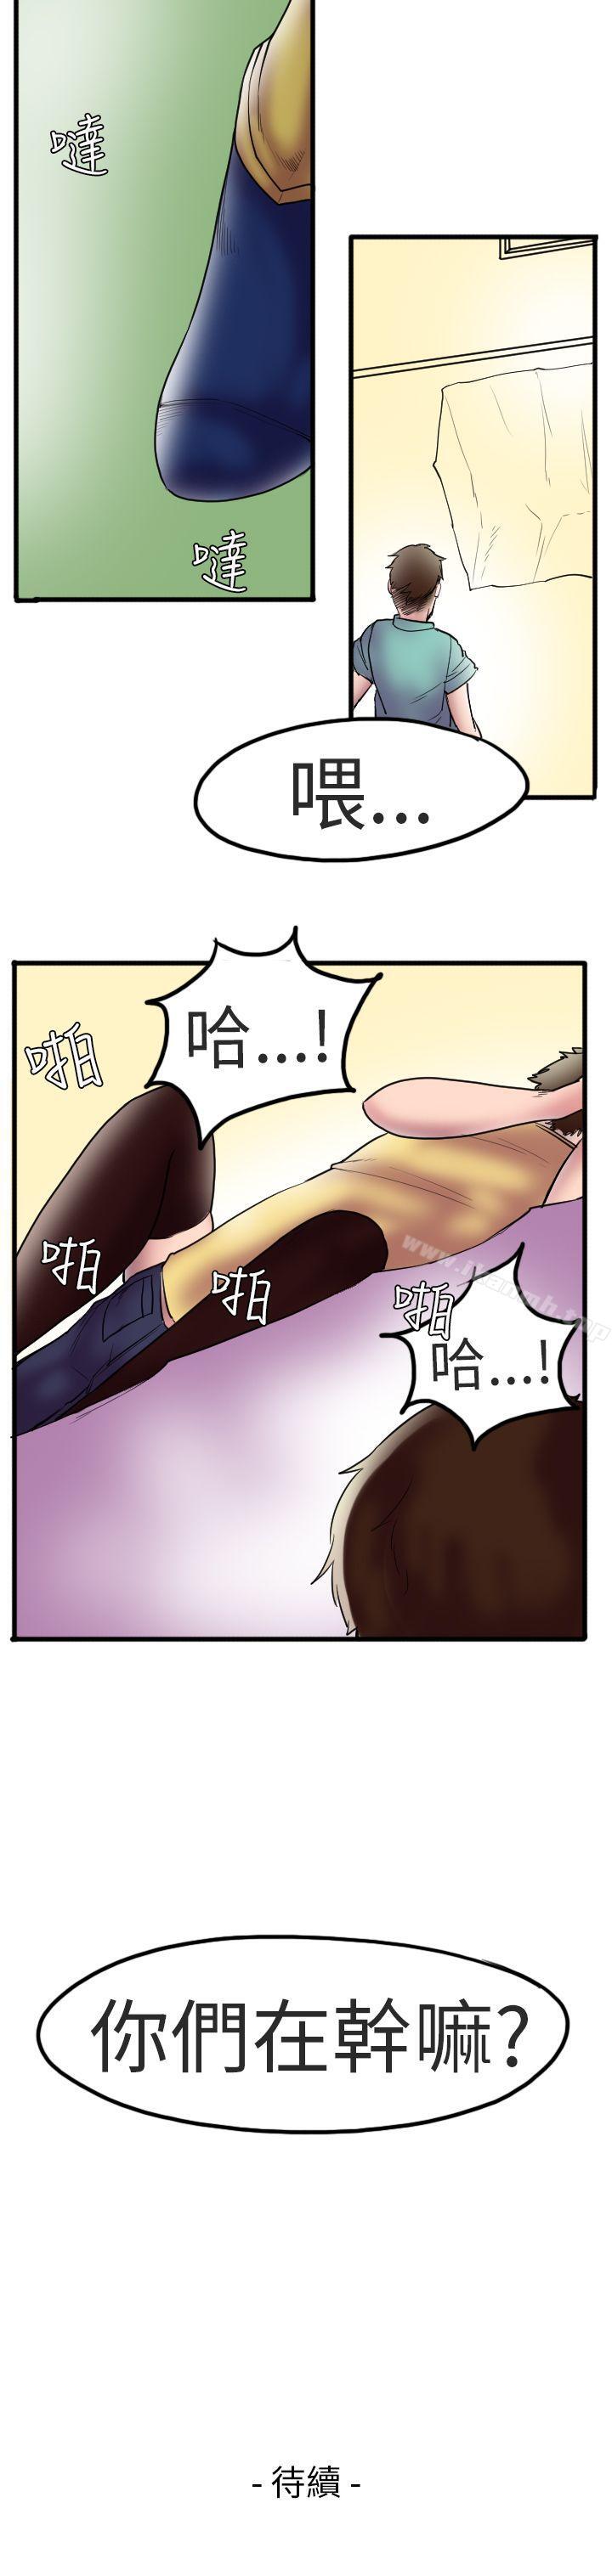 漫画韩国 秘密Story第二季   - 立即阅读 第二季 床與牆壁之間(上)第16漫画图片